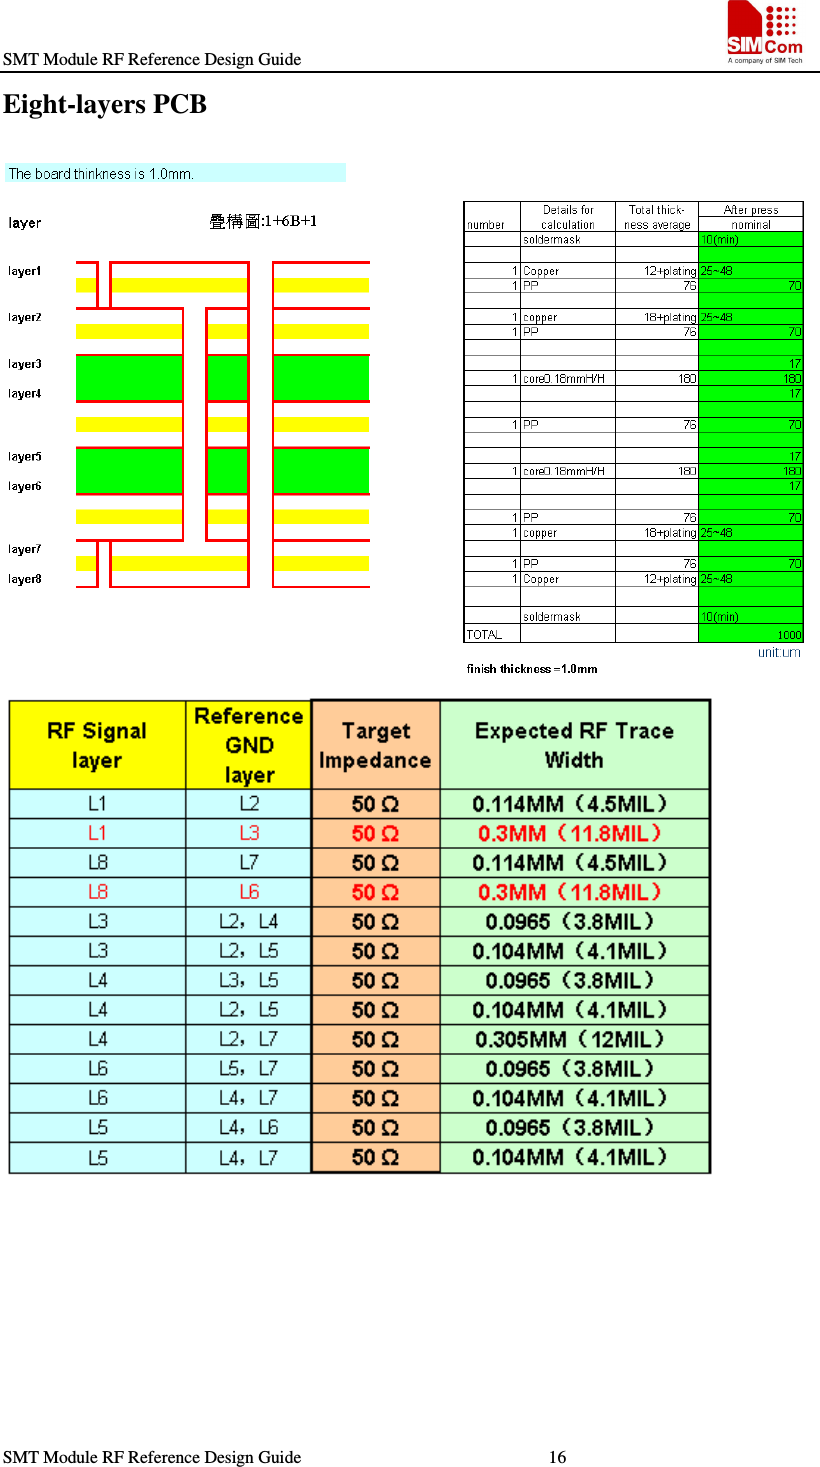 SMT Module RF Reference Design Guide                                                    SMT Module RF Reference Design Guide                                                        16                                                                   Eight-layers PCB  